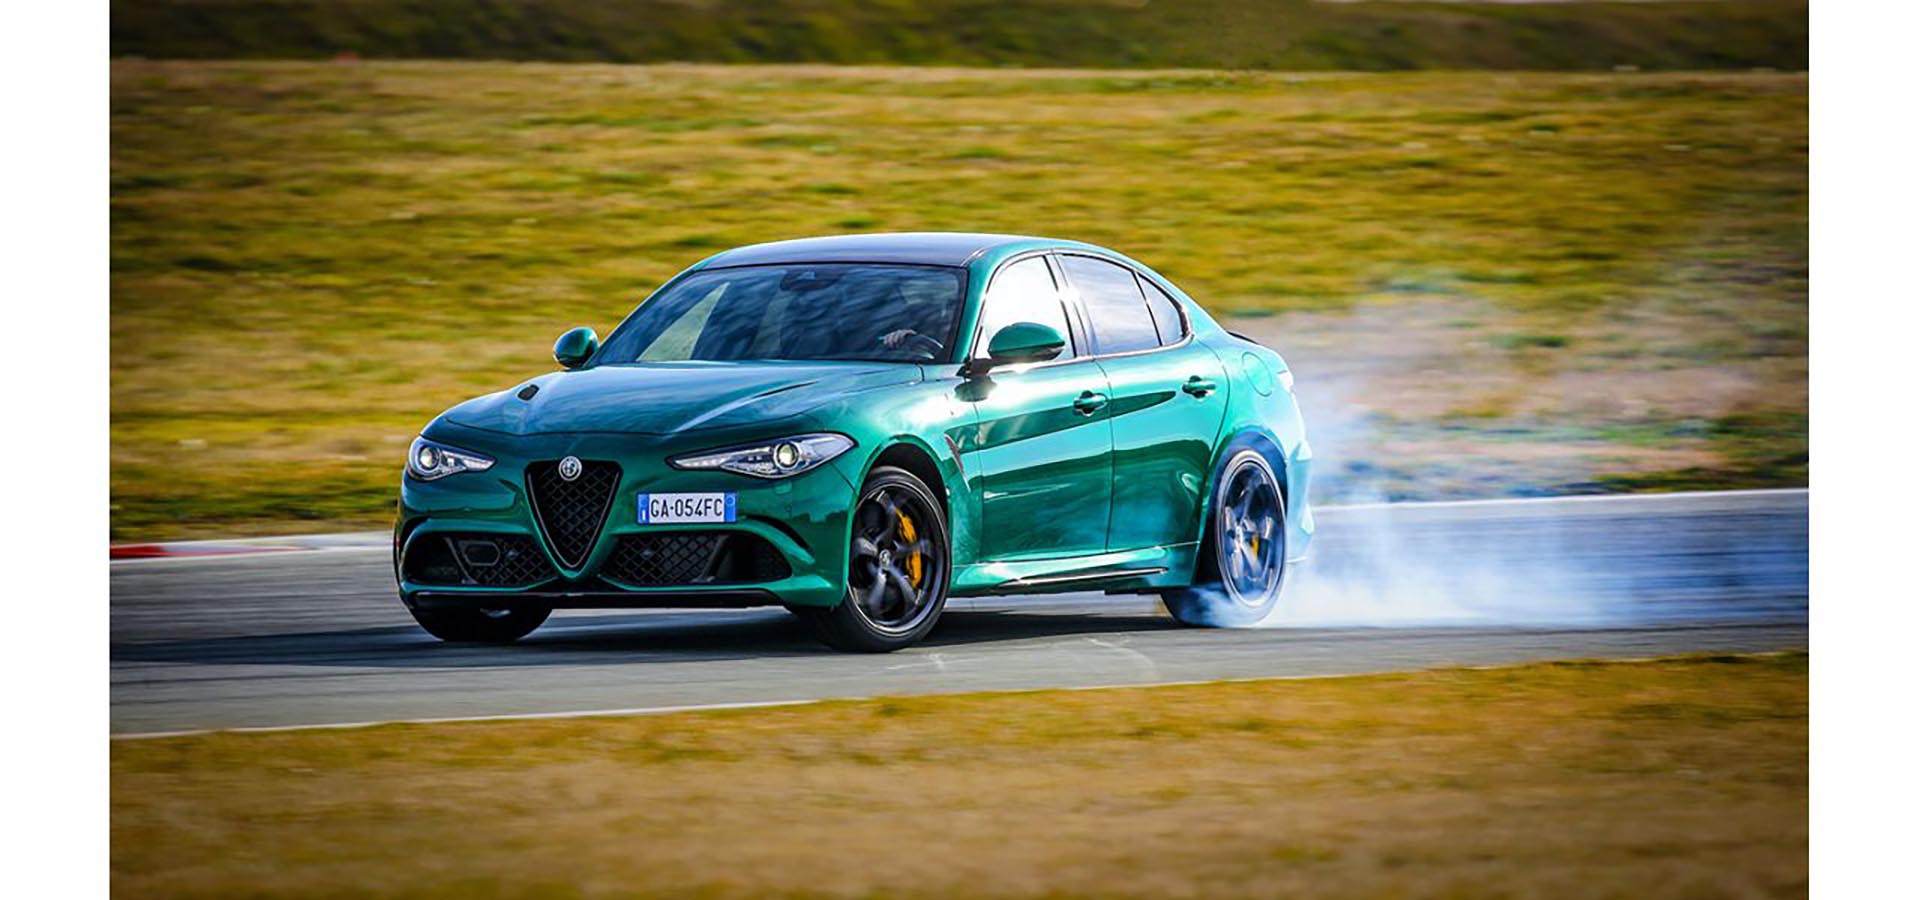 Alfa Romeo Giulia Quadrifoglio - „Best Performance Car for Thrills”